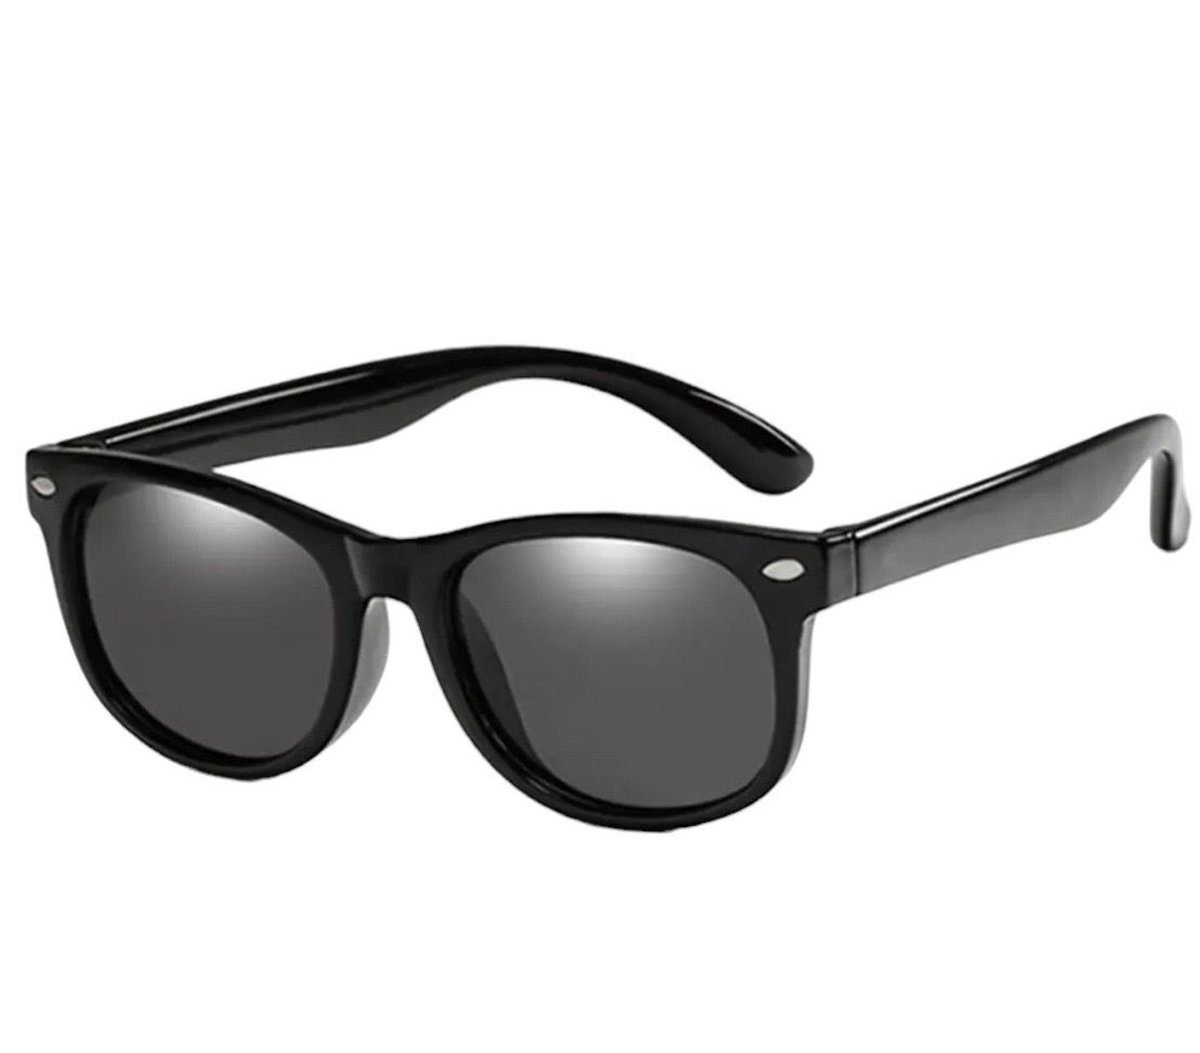 Kinder-zonnebril voor jongens/meisjes - kindermode - fashion - zonnebrillen - zwart montuur (glans)